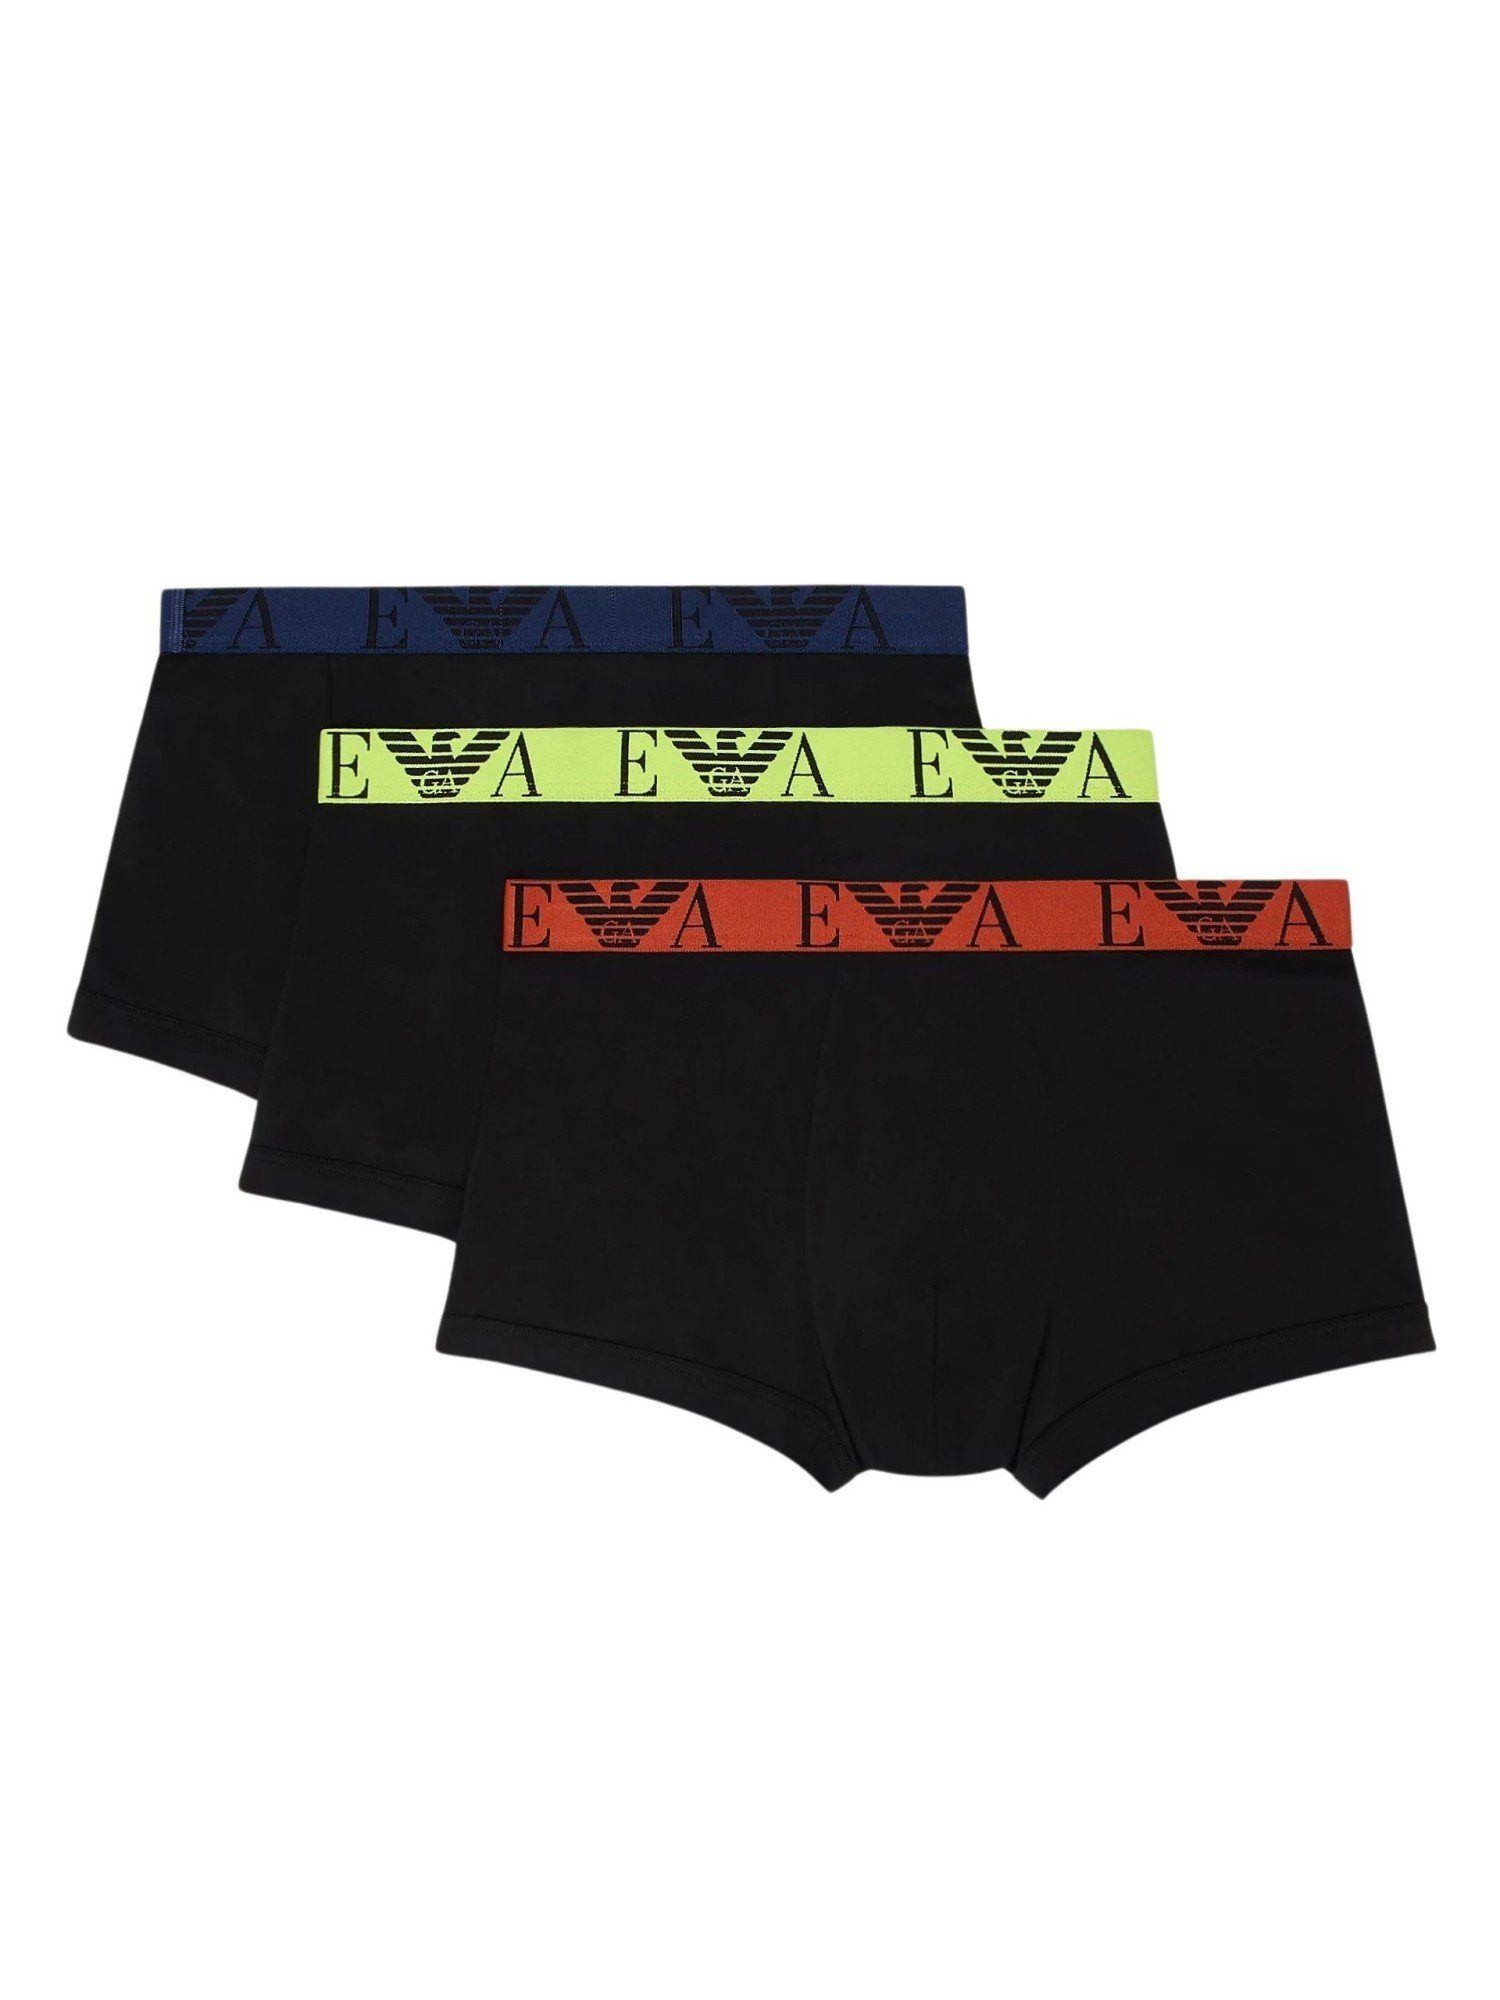 Shorts BLACK/BLACK/BLACK (3-St) Boxershorts Pack Trunks (73320) Armani Knit Emporio 3